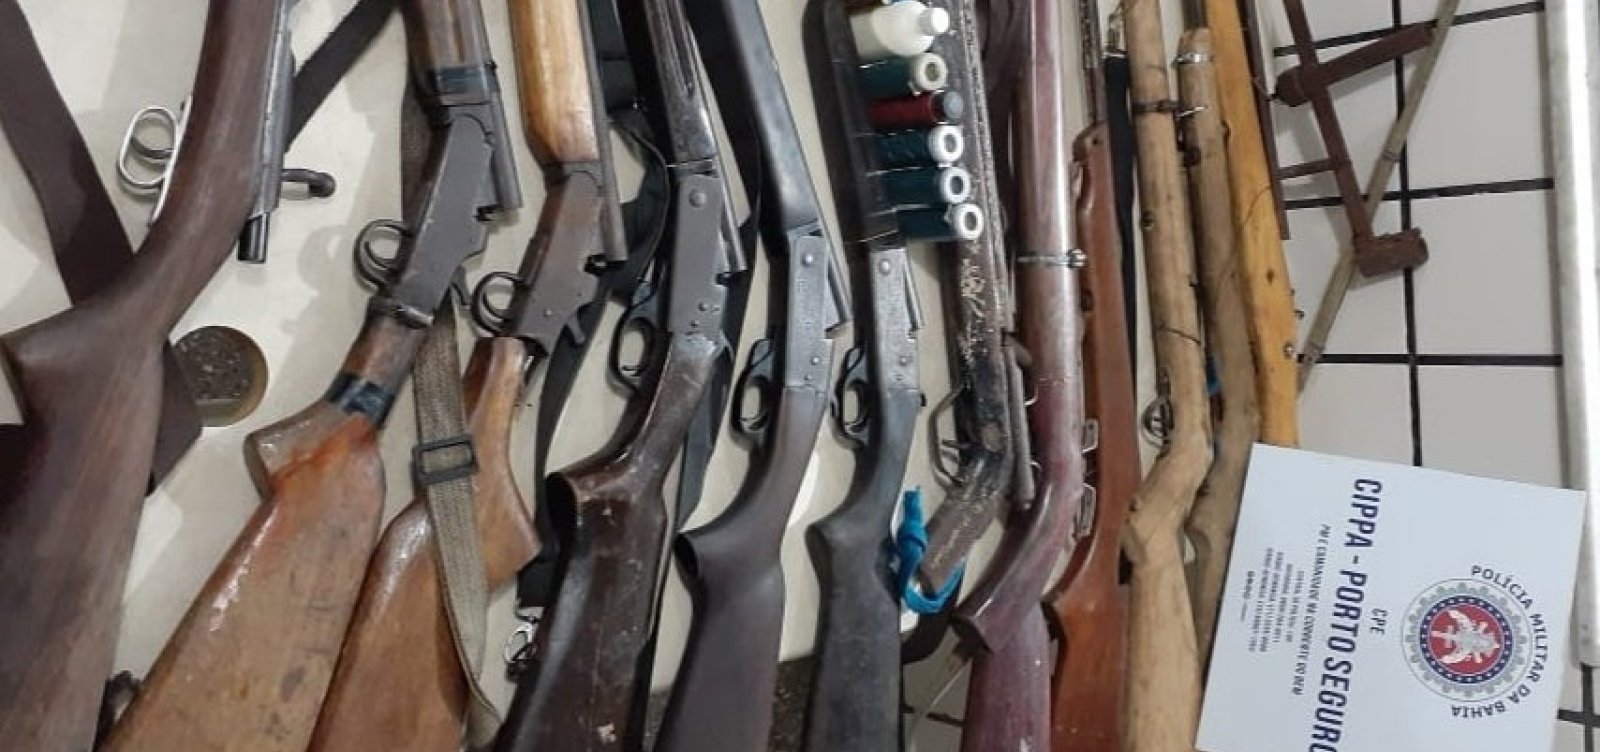 [Polícia apreende 13 armas em acampamento de caçadores no sul do estado]